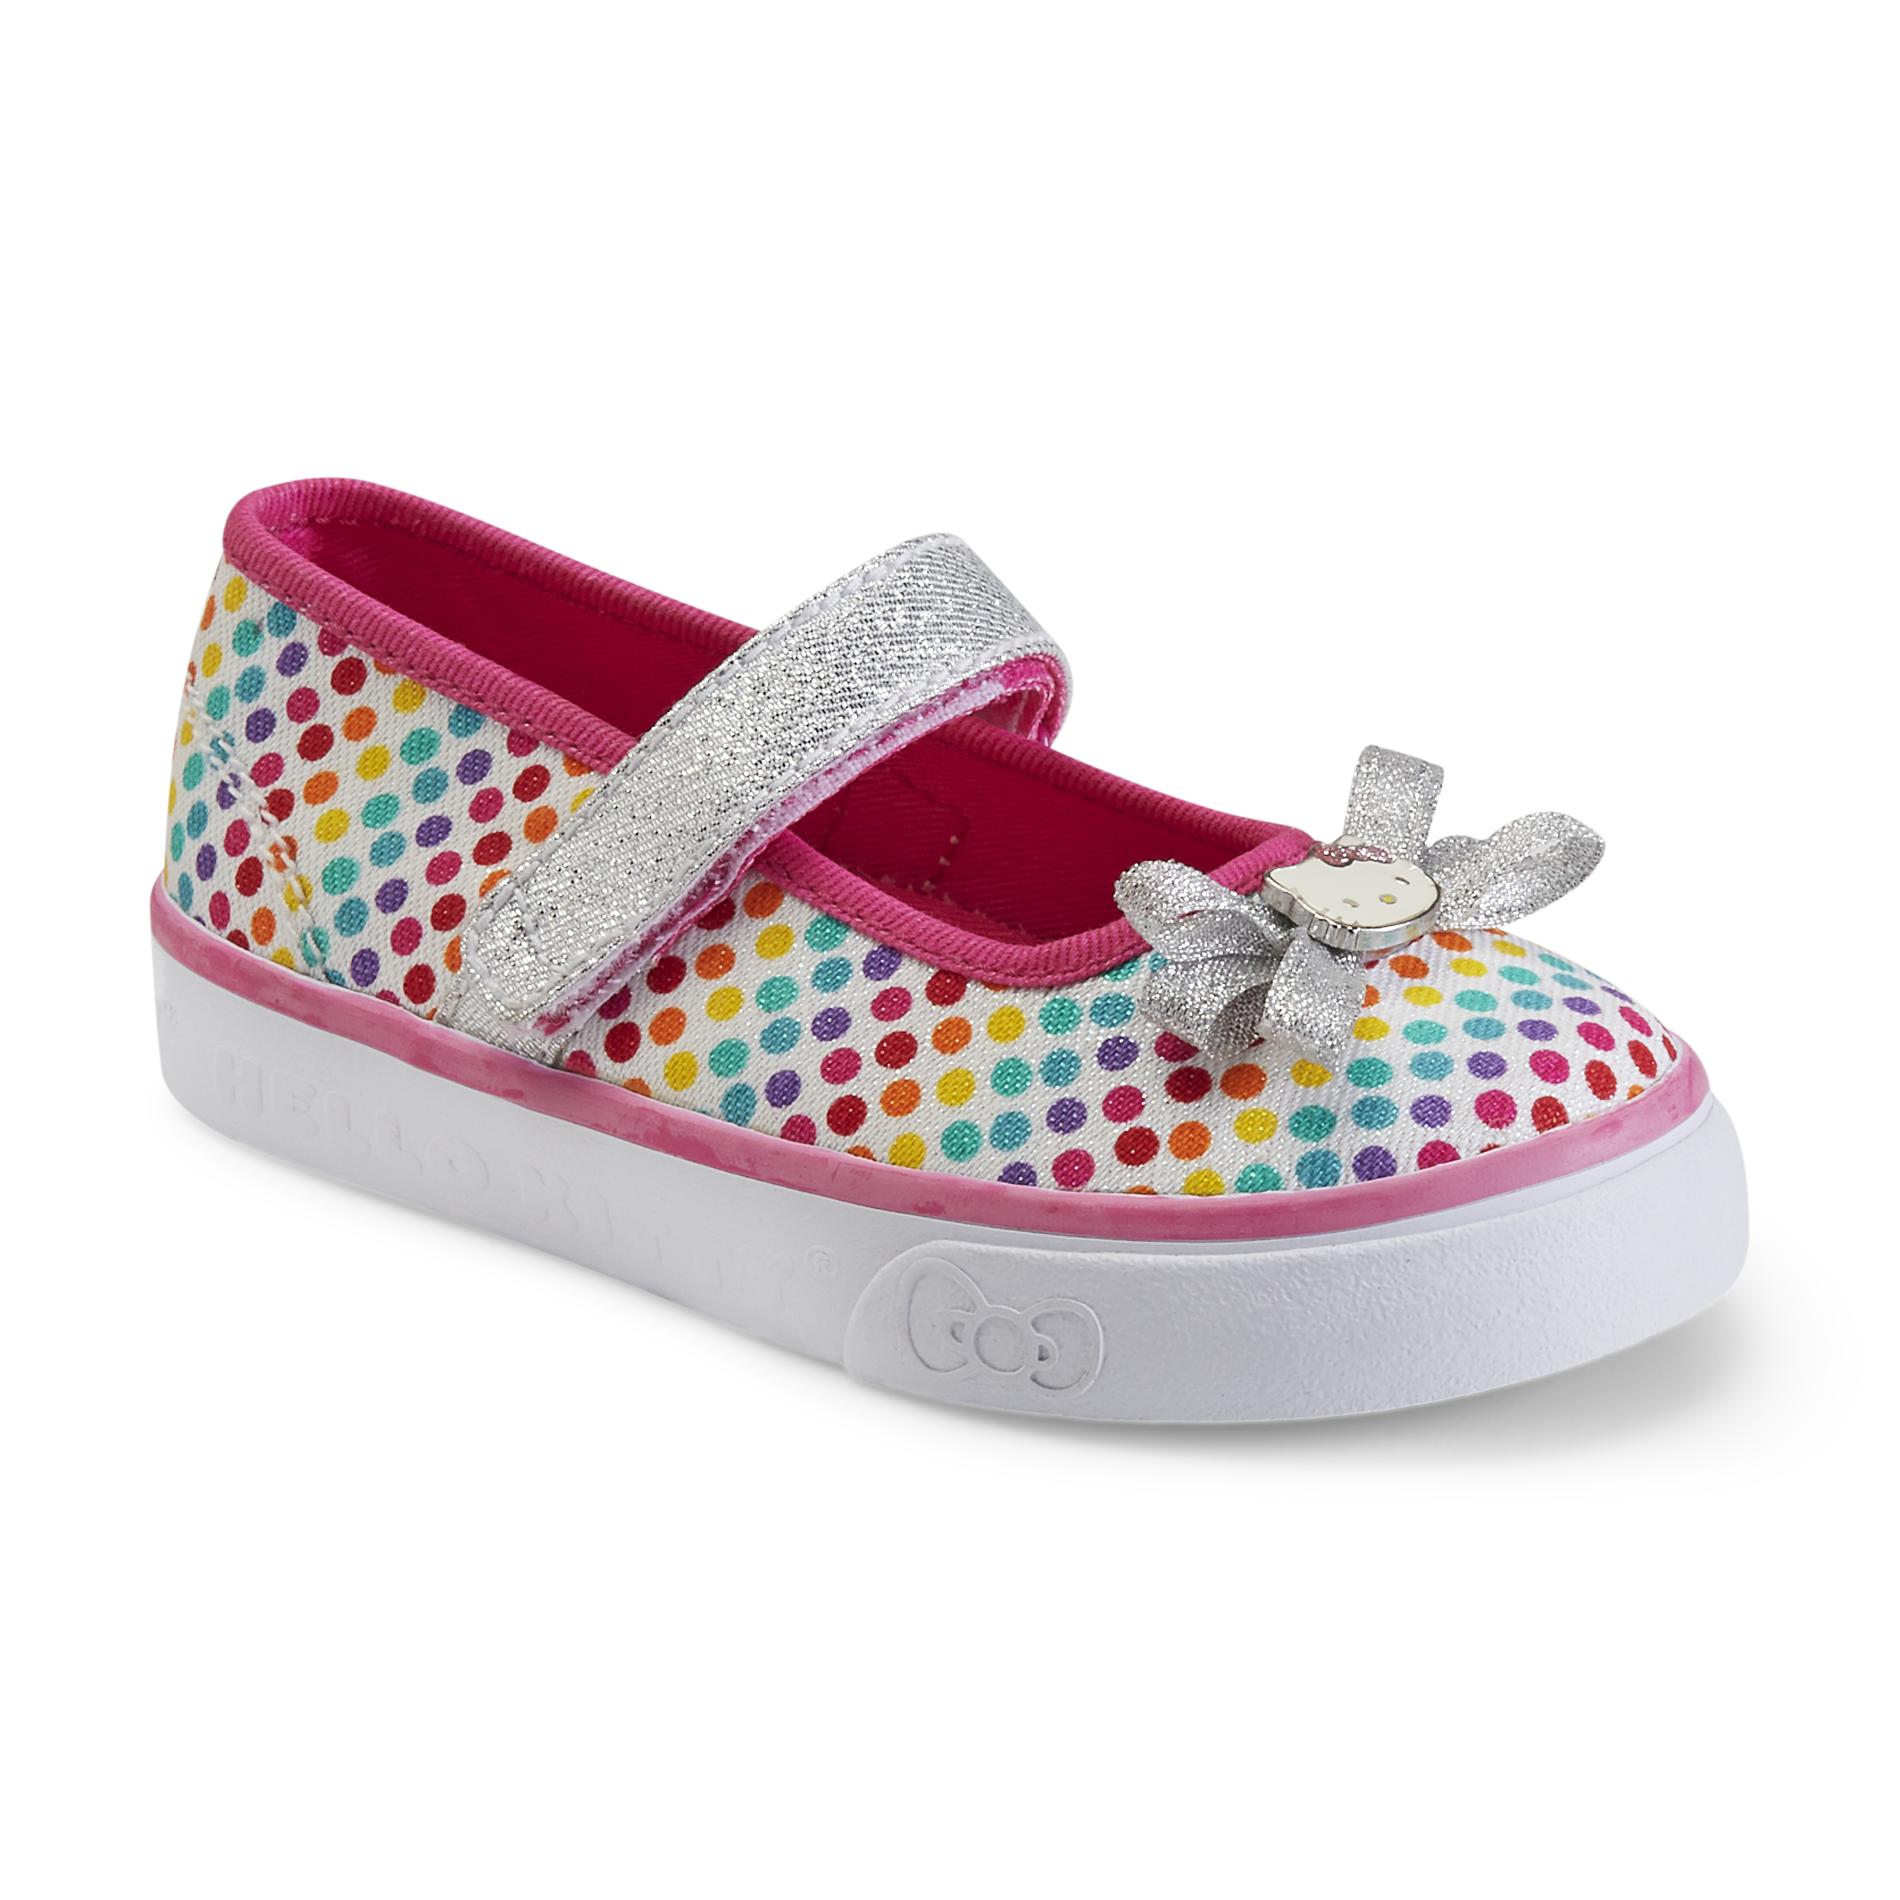 Keds Toddler Girl's Bow-Lovely Hello Kitty Rainbow Dot Sneaker Flats